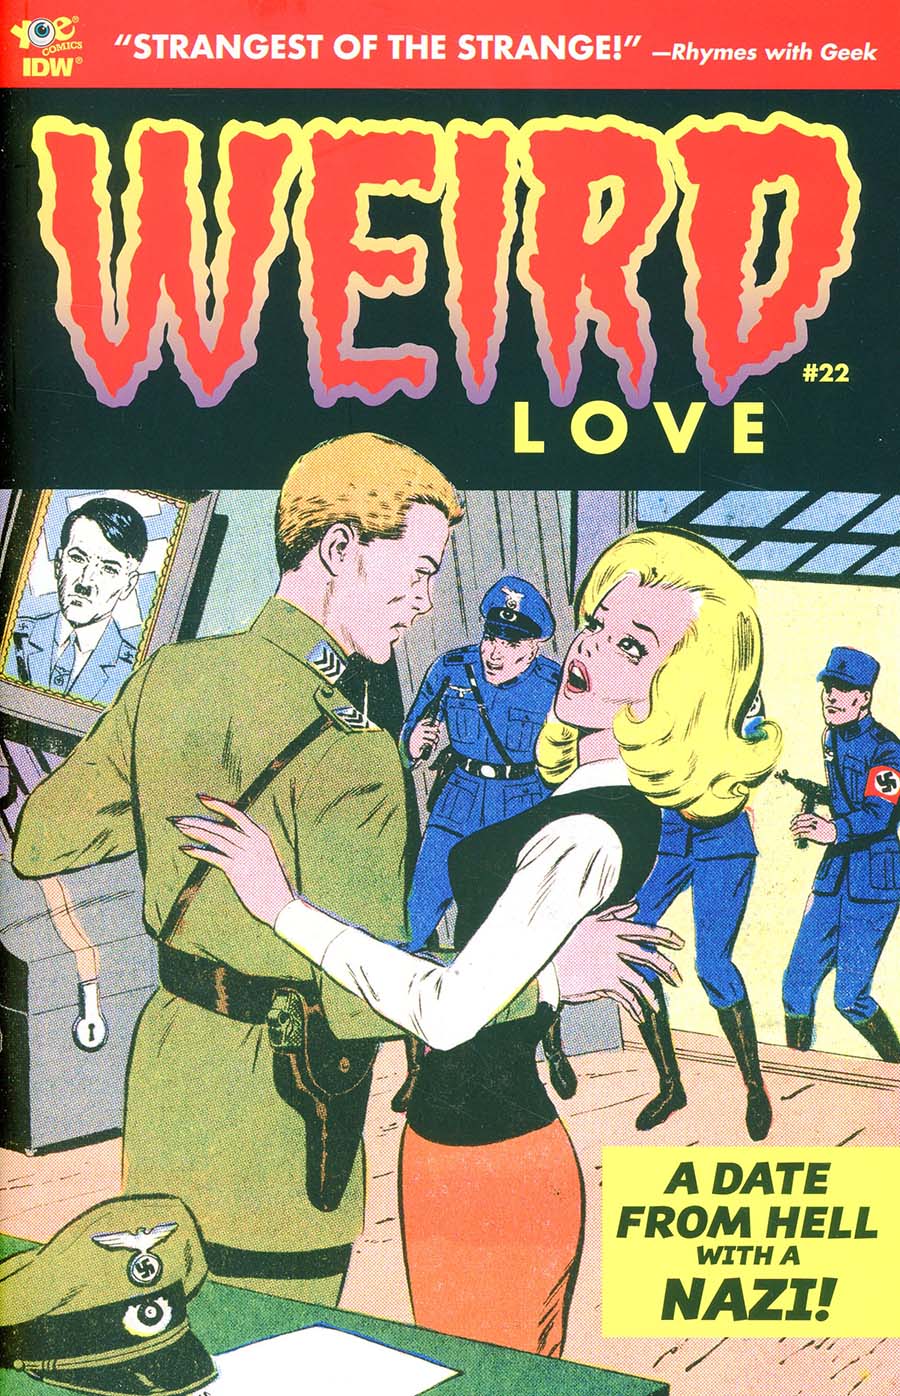 Weird Love #22